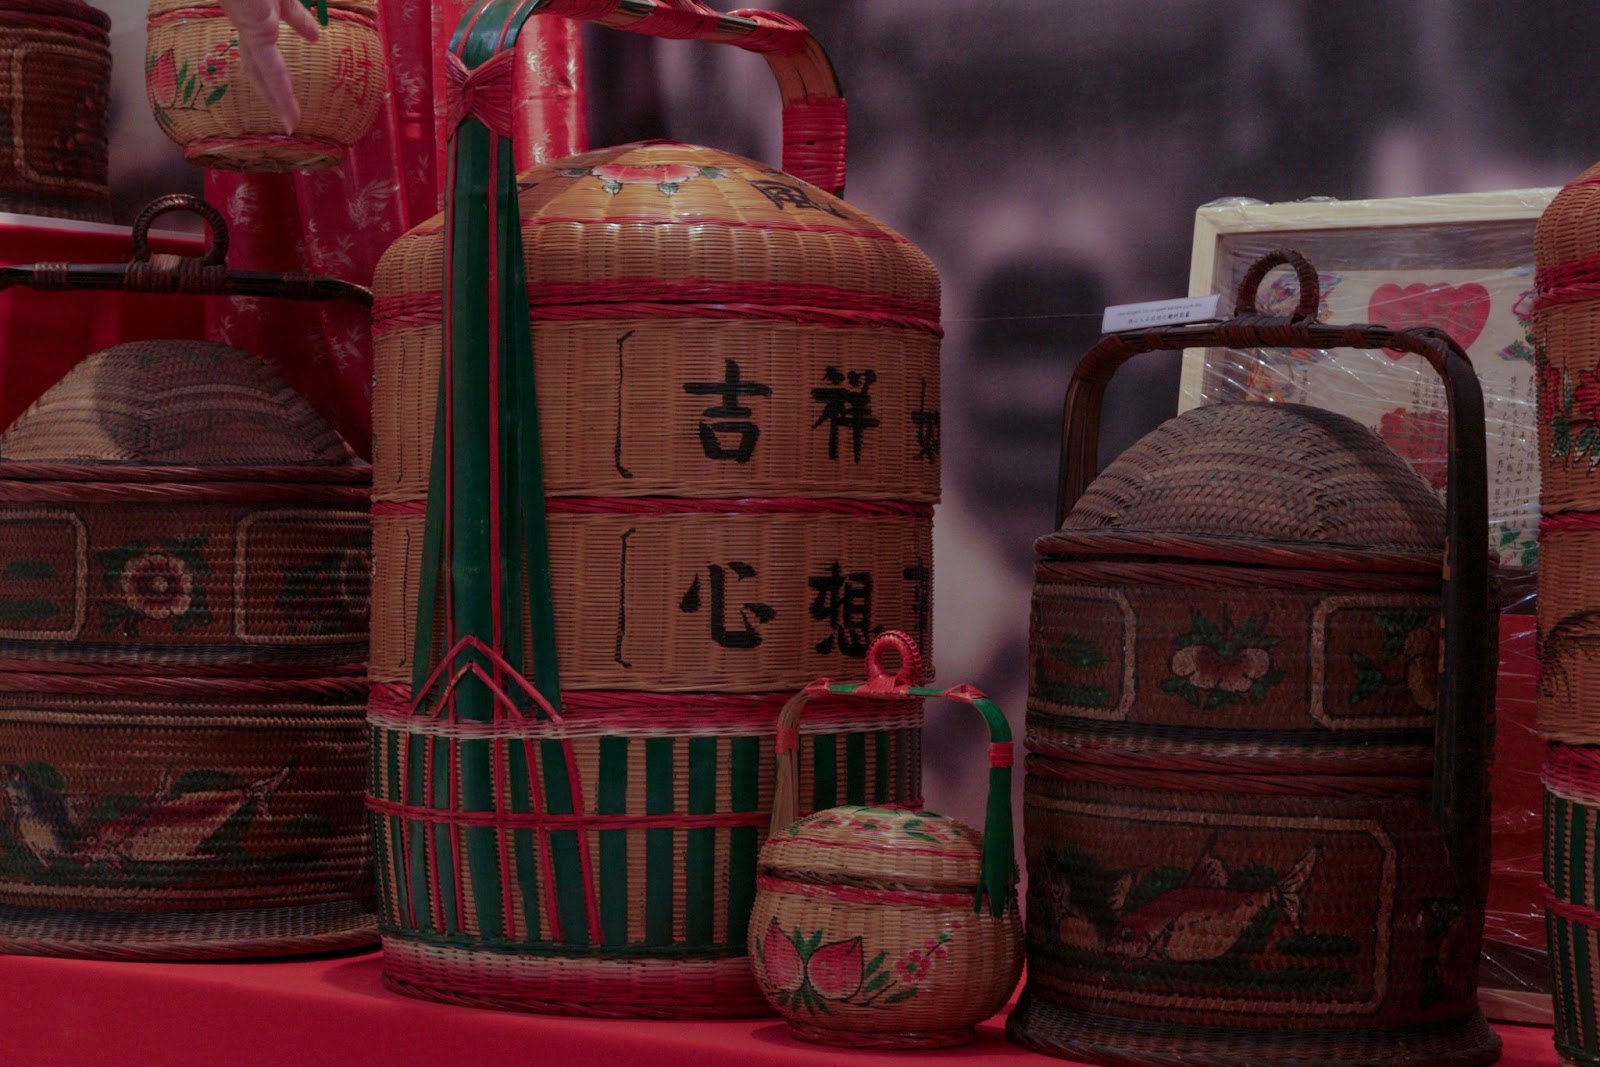 Kỷ vật còn sót lại của hội phụ nữ độc thân và hàng ngàn món đồ vô giá của người Hoa ở SG - Ảnh 6.